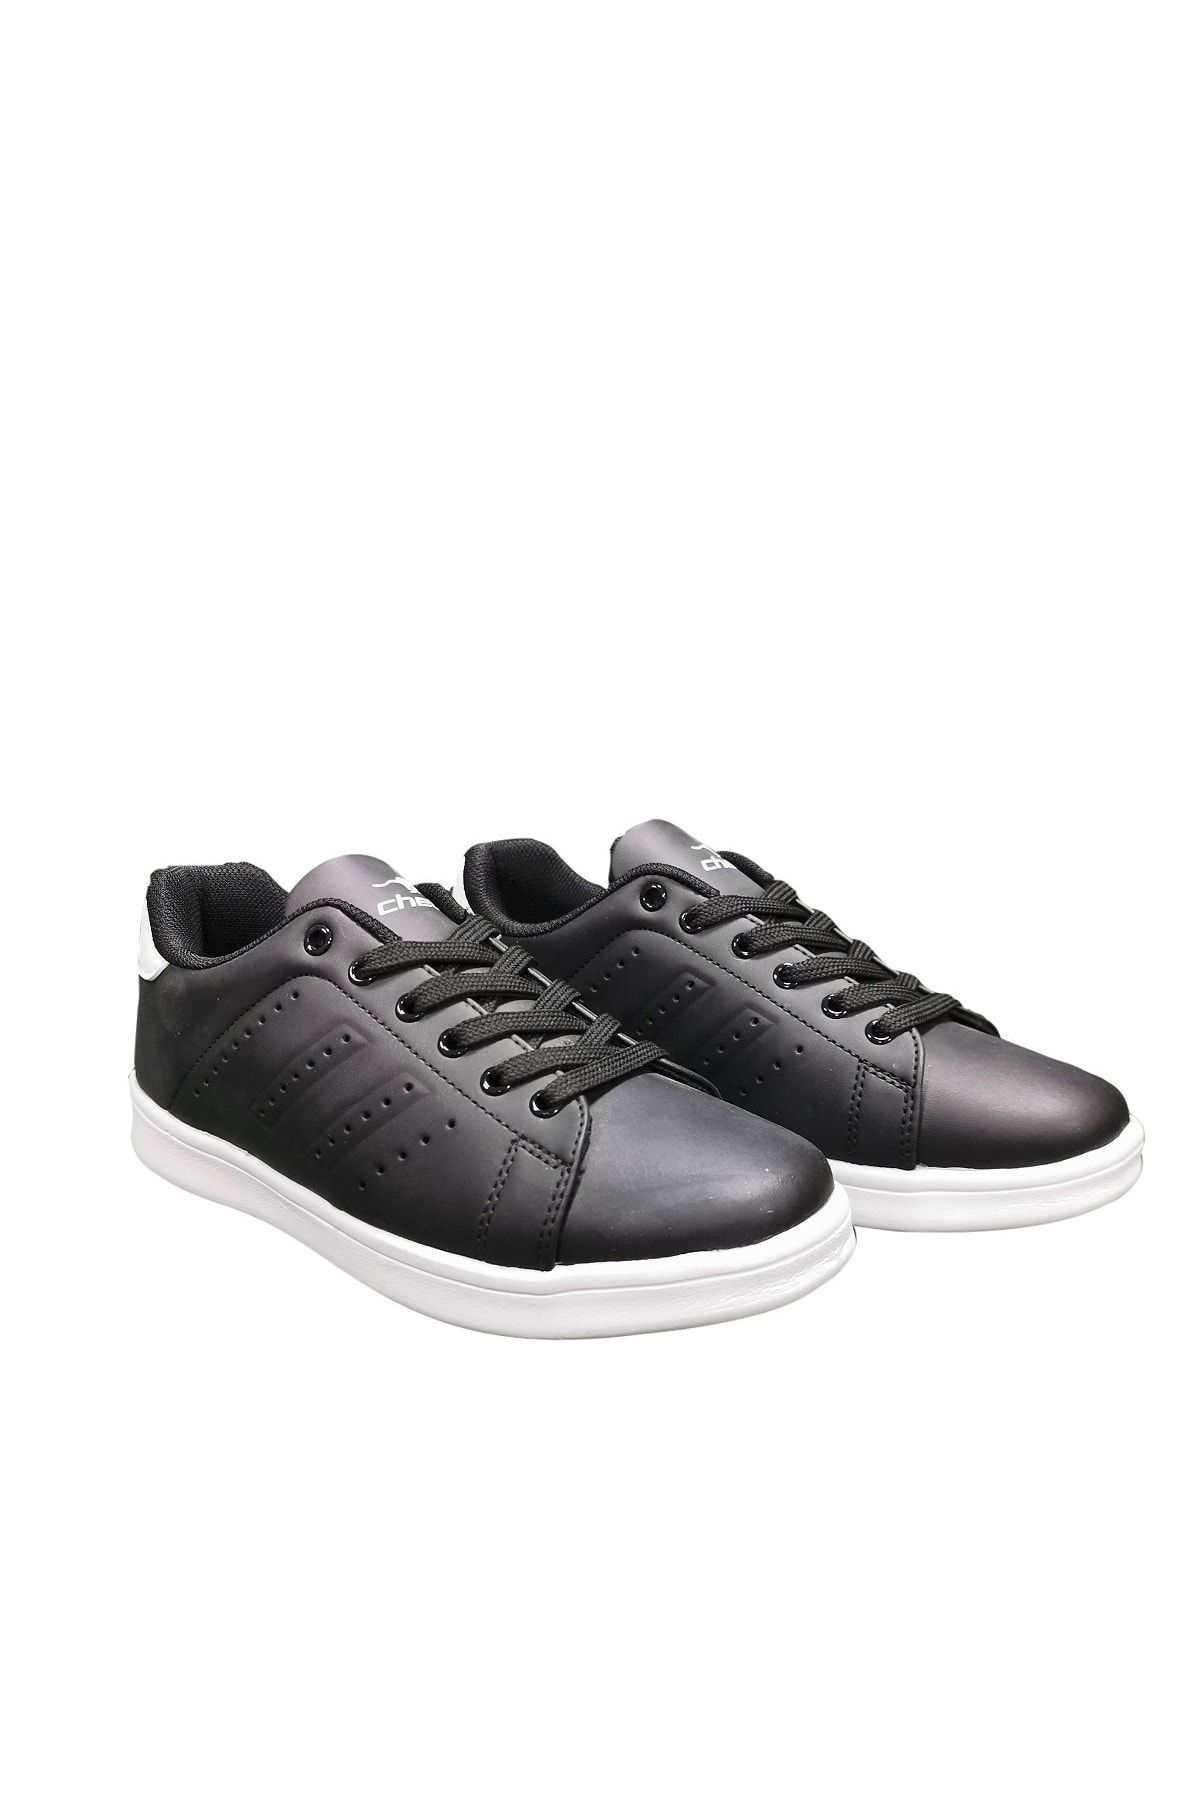 Cheta Siyah Beyaz Günlük Sneakers Spor Ayakkabı Cht003